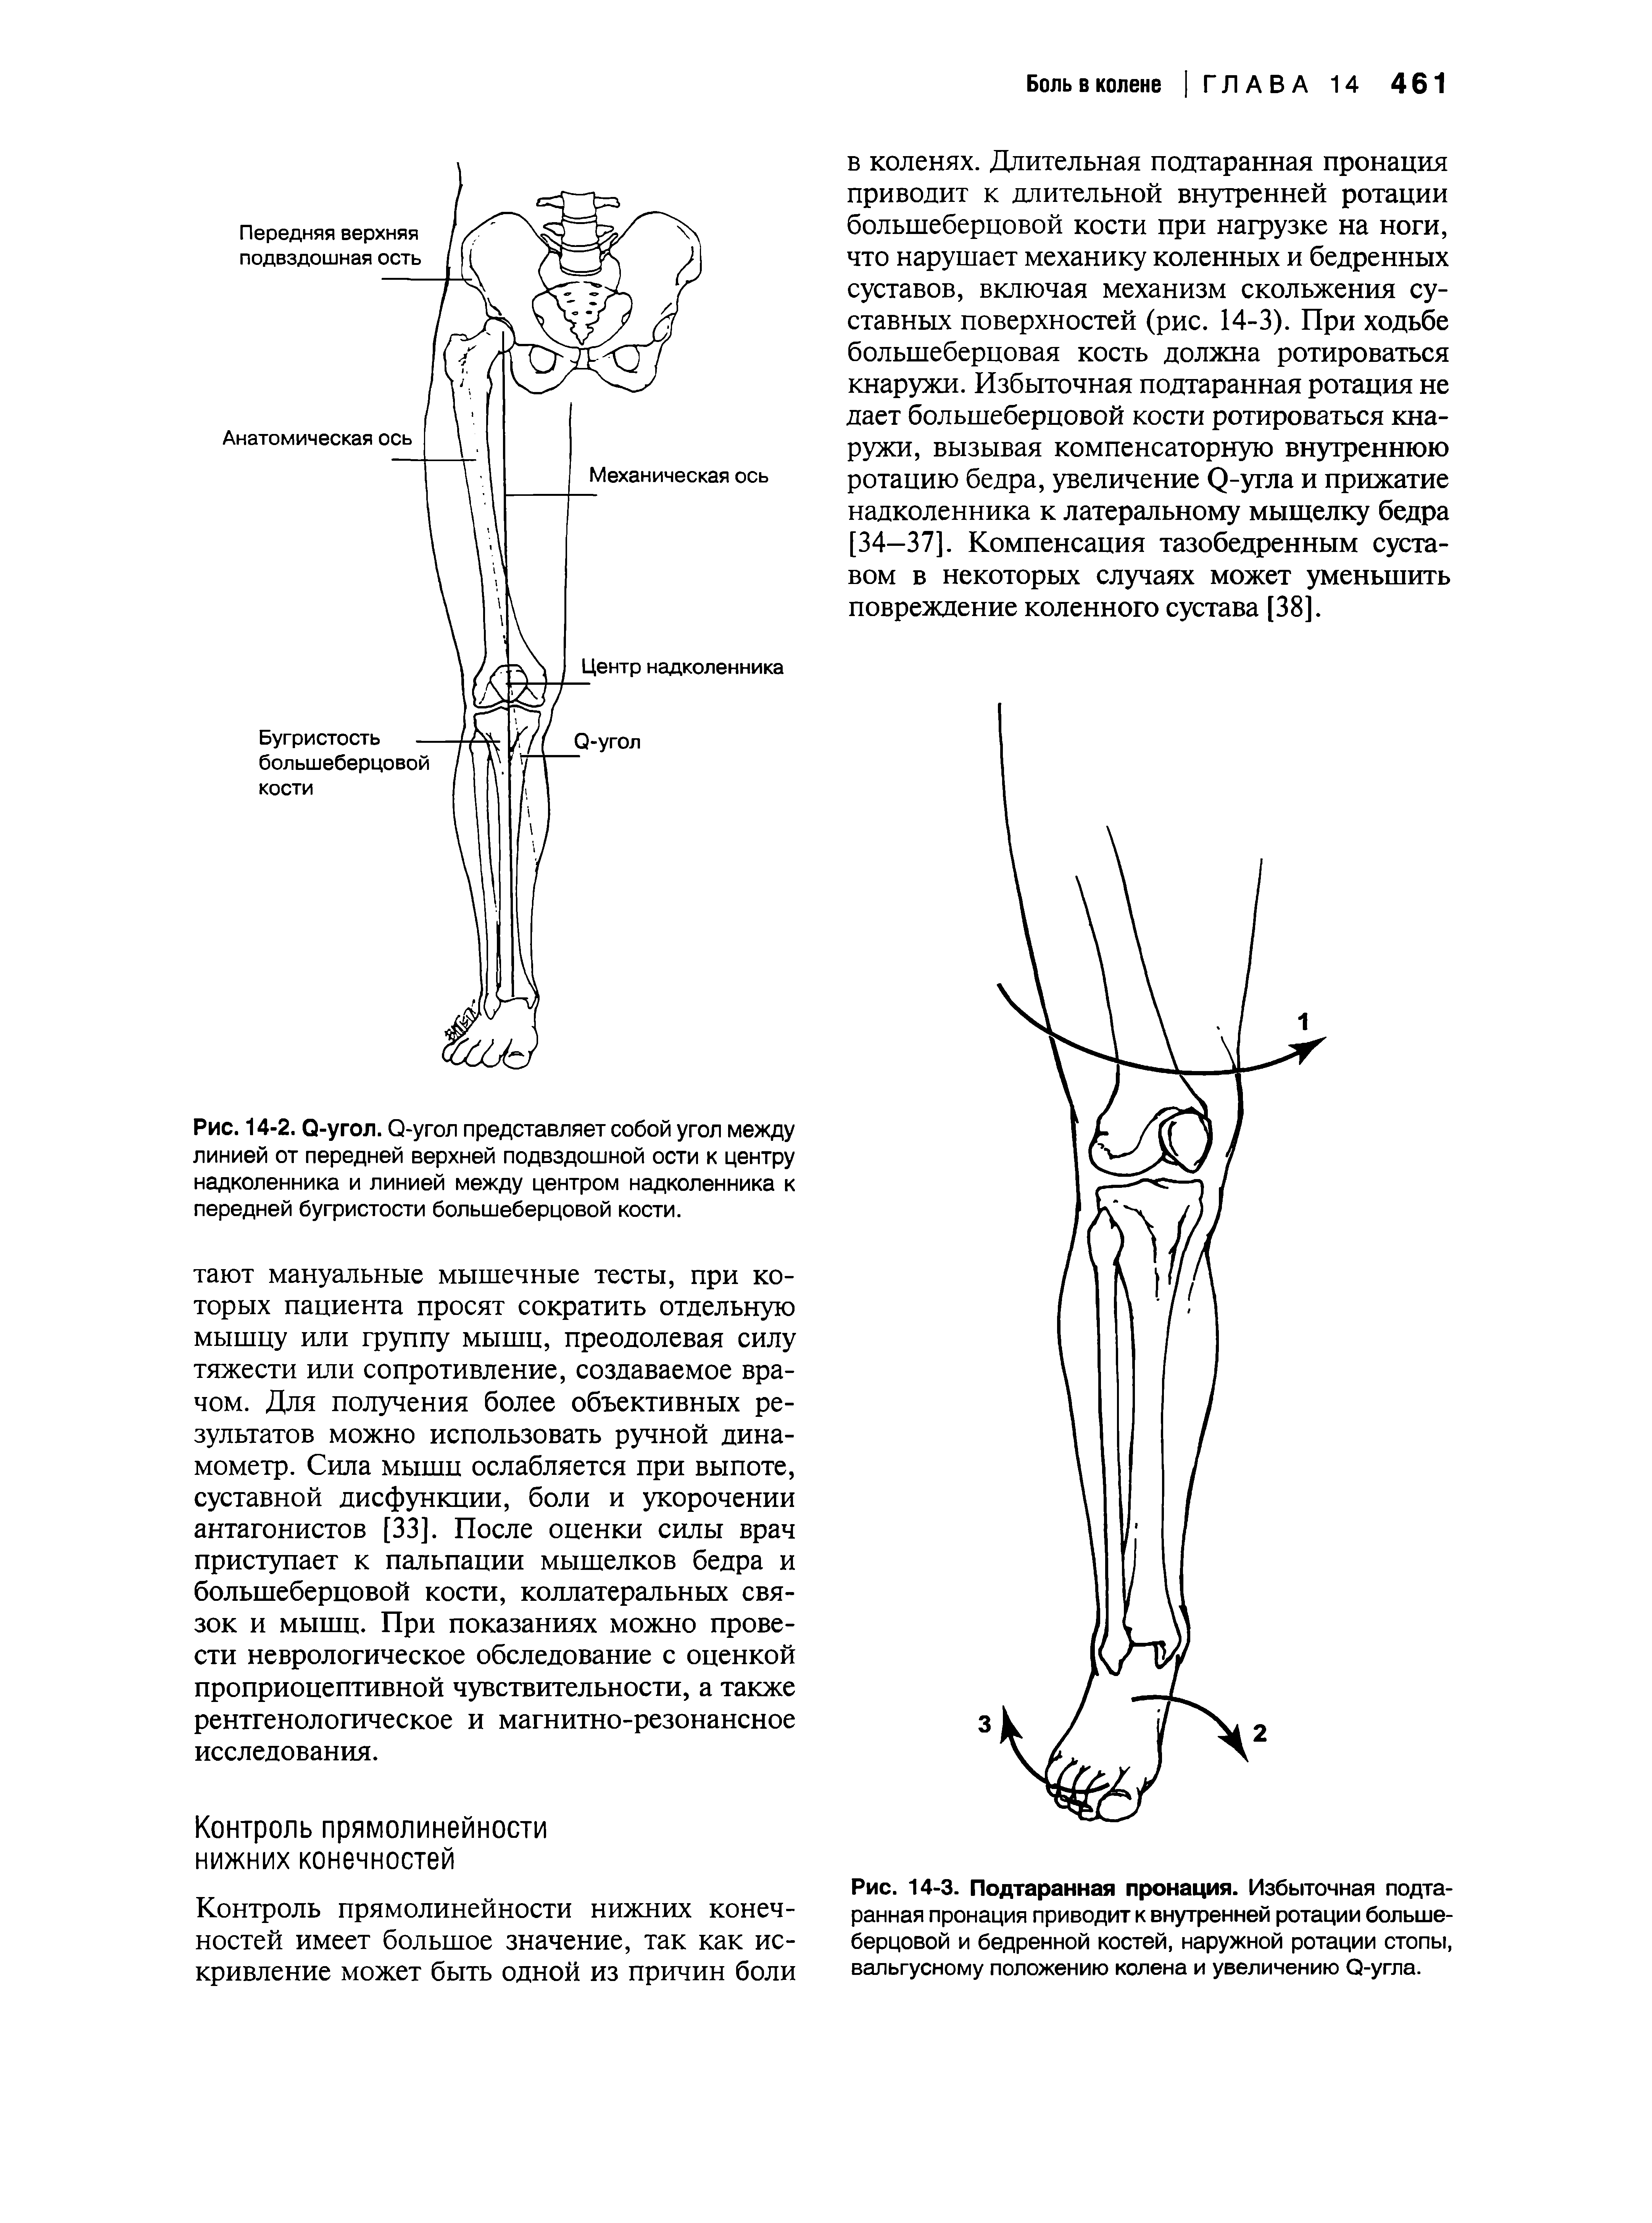 Рис. 14-3. Подтаранная пронация. Избыточная подтаранная пронация приводит к внутренней ротации большеберцовой и бедренной костей, наружной ротации стопы, вальгусному положению колена и увеличению О-угла.